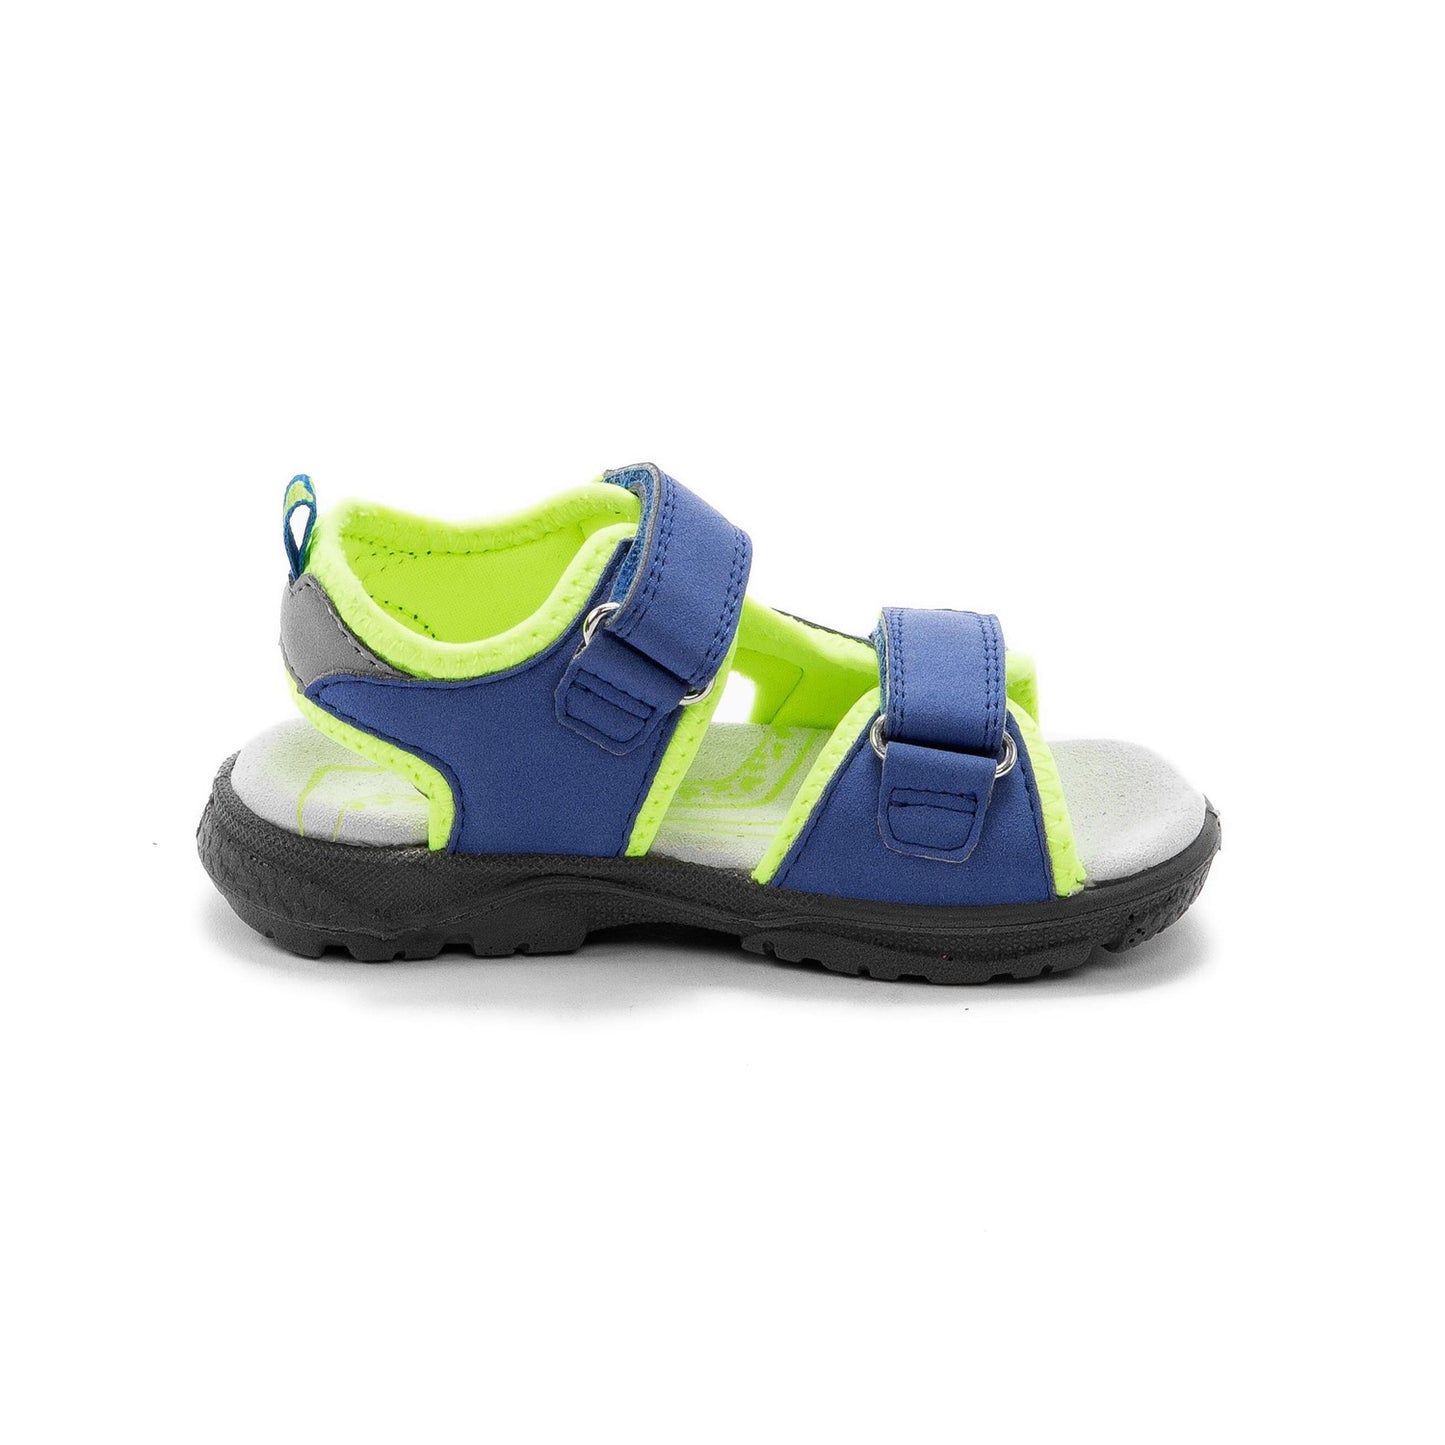 Lurchi sandal lights - Kirbys Footwear